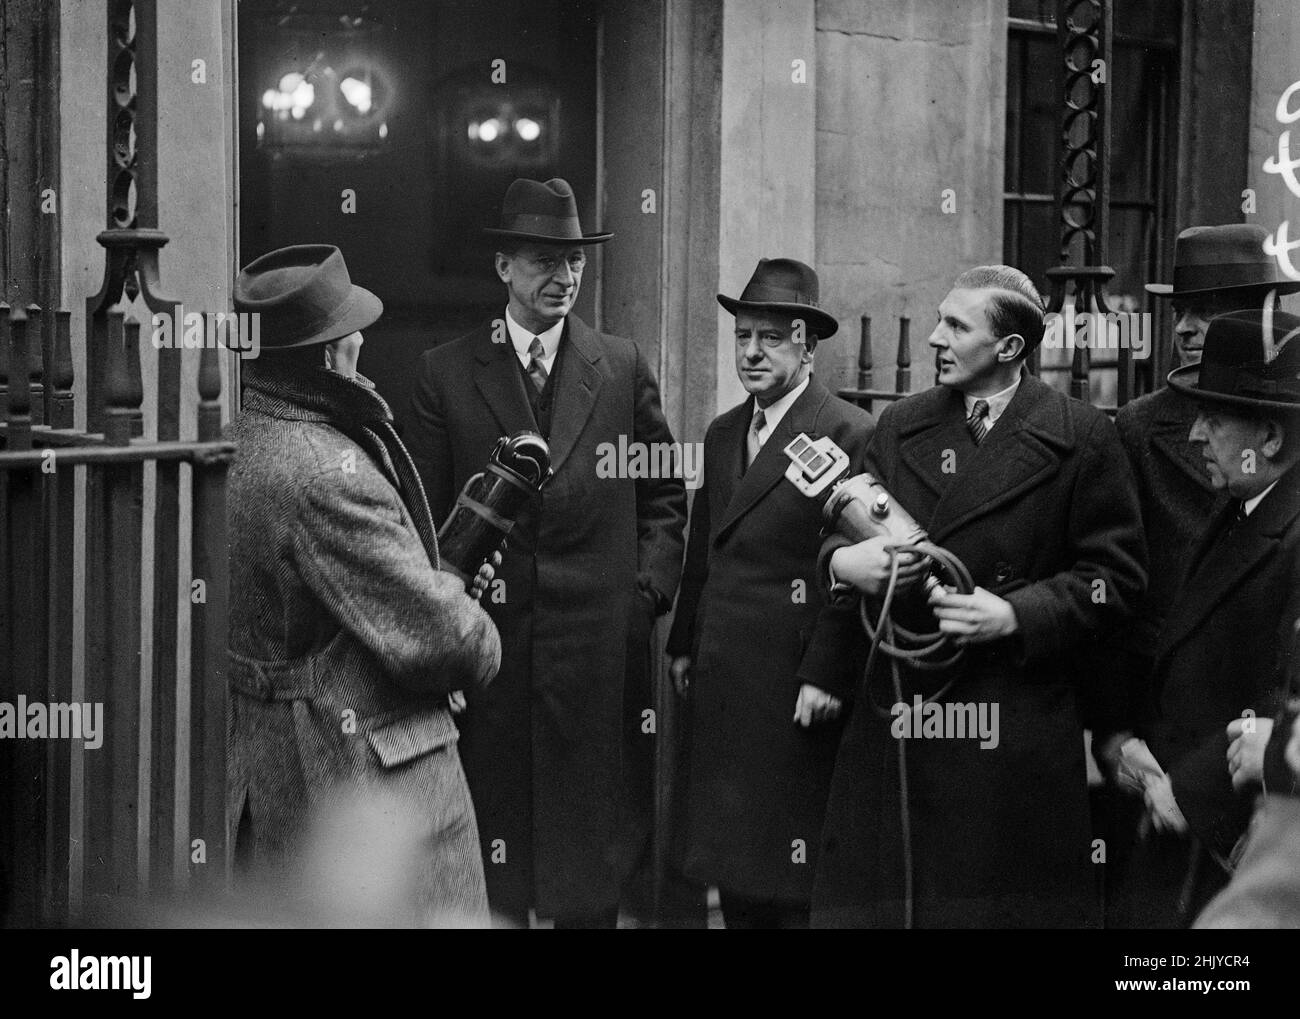 LONDON - JANUAR: Erster Taoiseach von Irland Eamon de Valera (1882-1975) in London zu Gesprächen mit dem britischen Premierminister in der Downing Street Nr. 10 im Januar 1938. Neben ihm ist John Whelan Dulanty (1881-1955), der irische Hochkommissar (später Botschafter).Quelle: The DL Archive Collection/Alamy Stockfoto